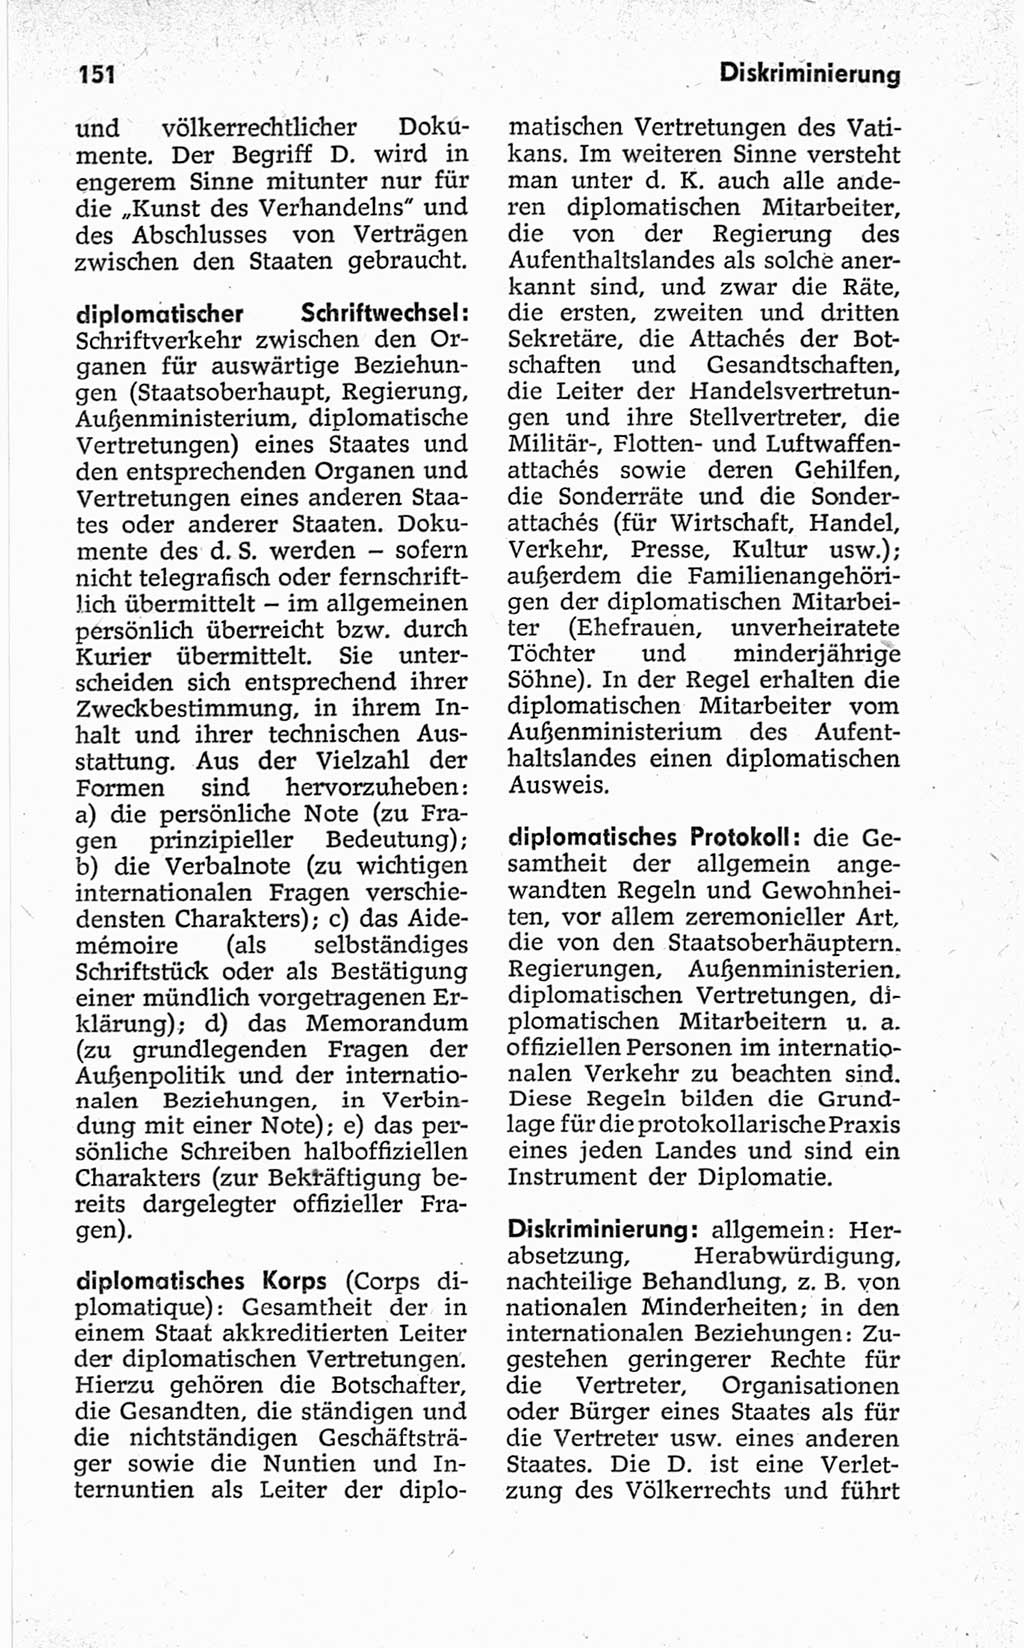 Kleines politisches Wörterbuch [Deutsche Demokratische Republik (DDR)] 1967, Seite 151 (Kl. pol. Wb. DDR 1967, S. 151)